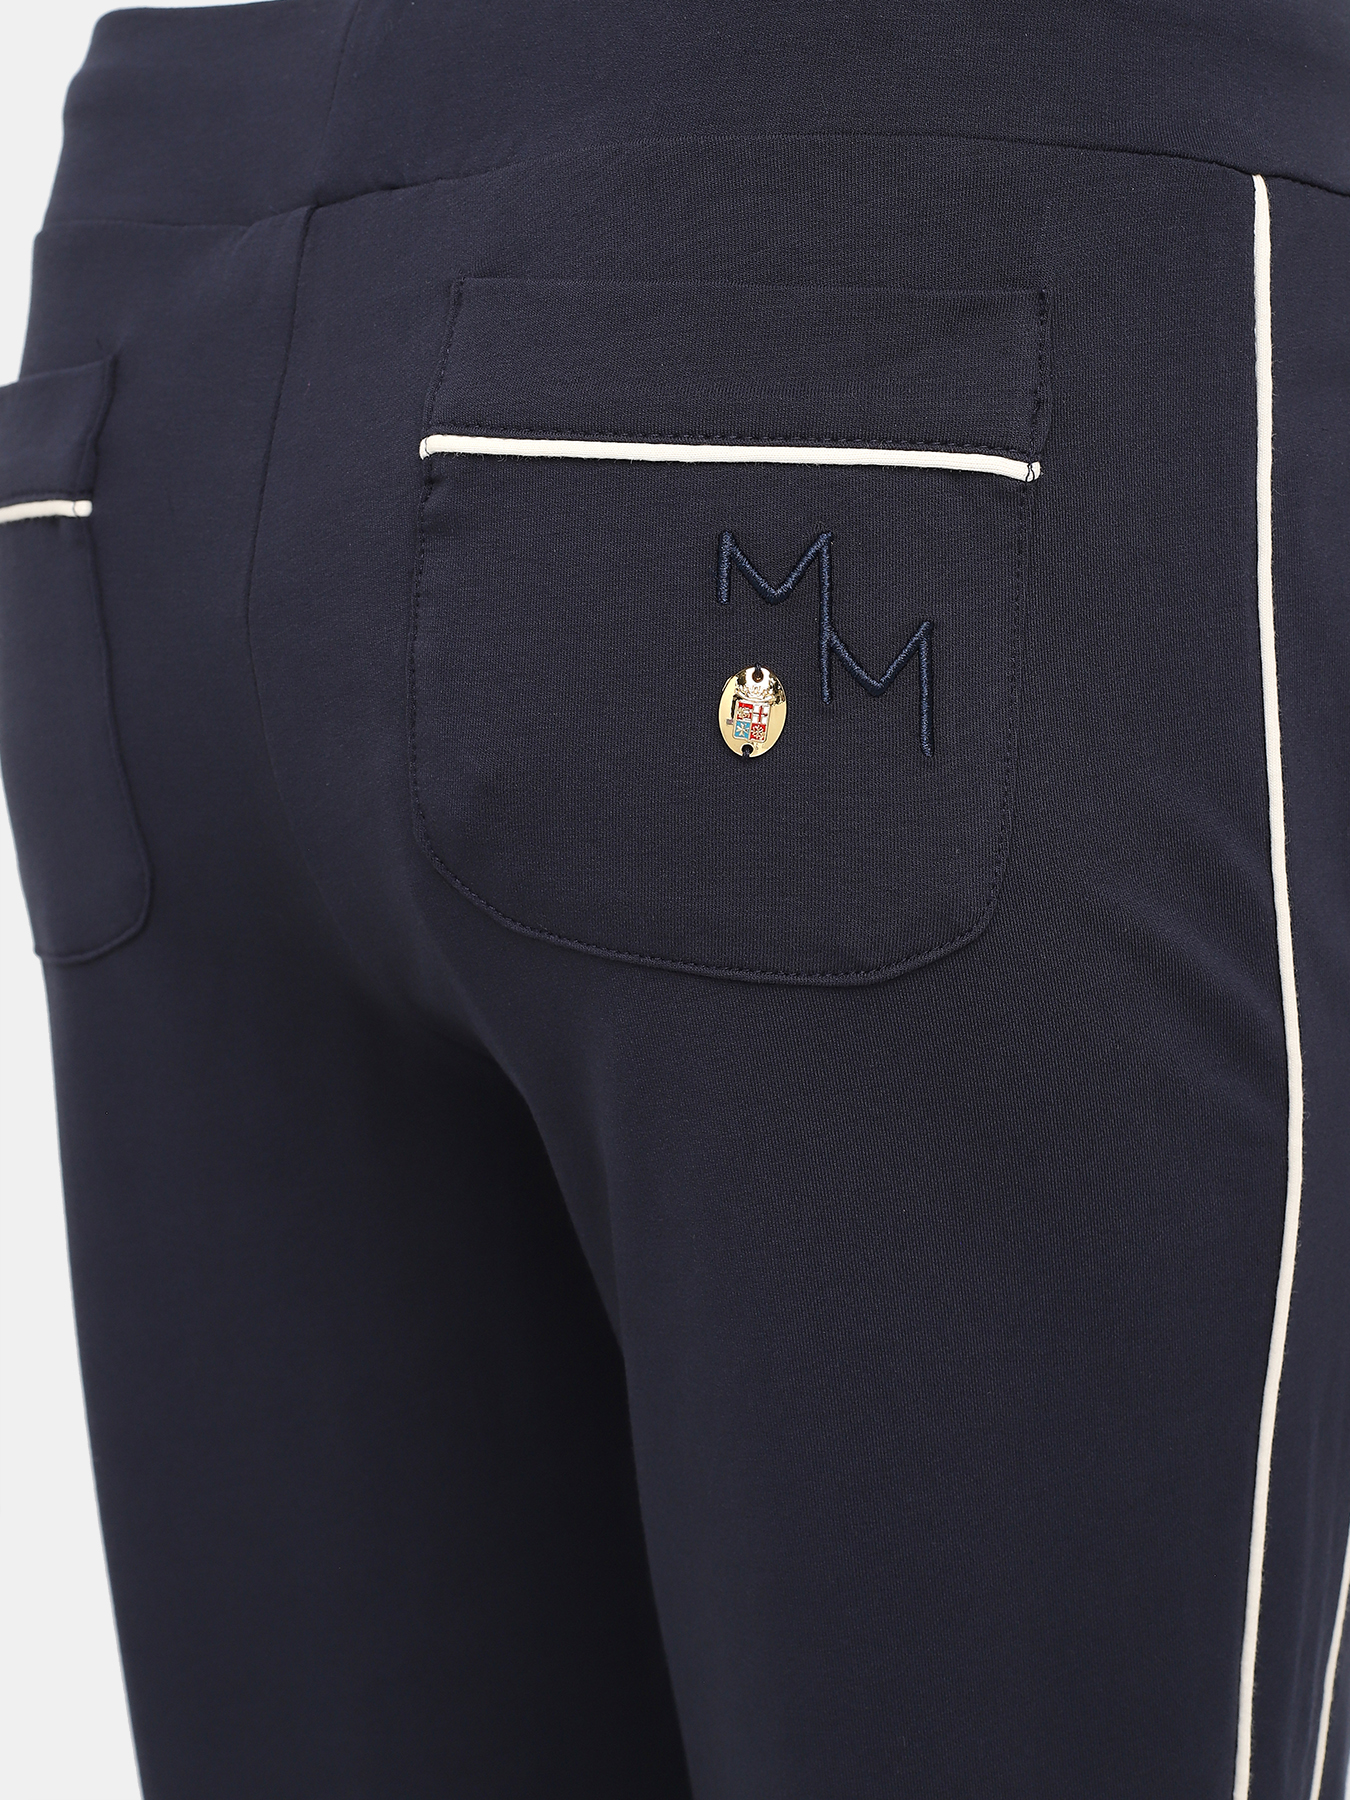 Спортивные брюки Marina Militare 425546-043, цвет синий, размер 44-46 - фото 3